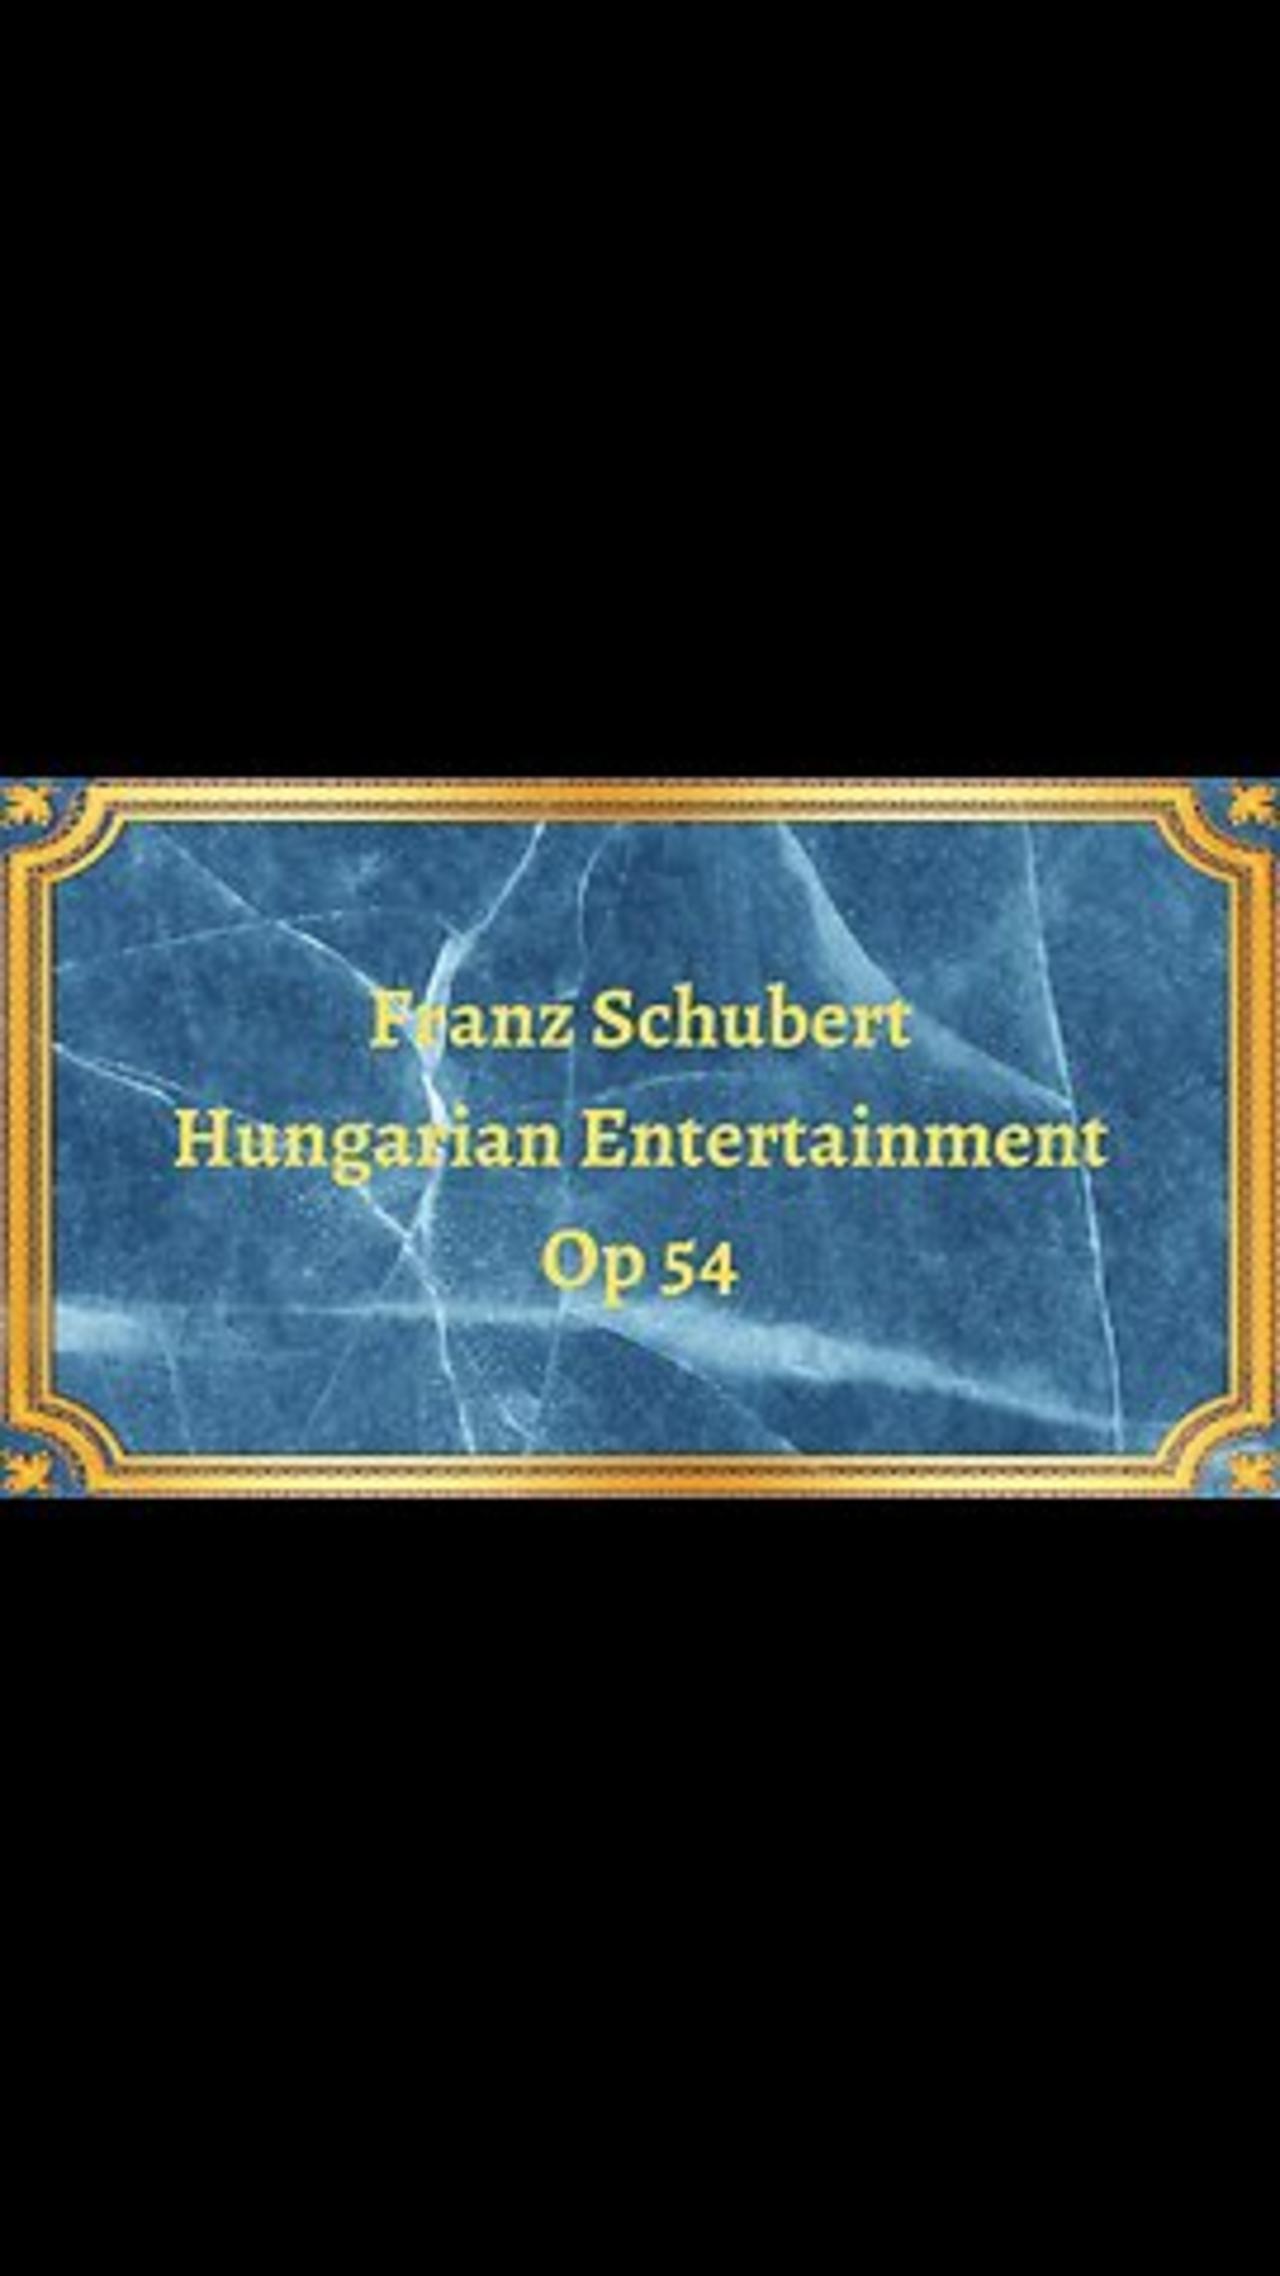 Franz Schubert Hungarian Entertainment, Op 54